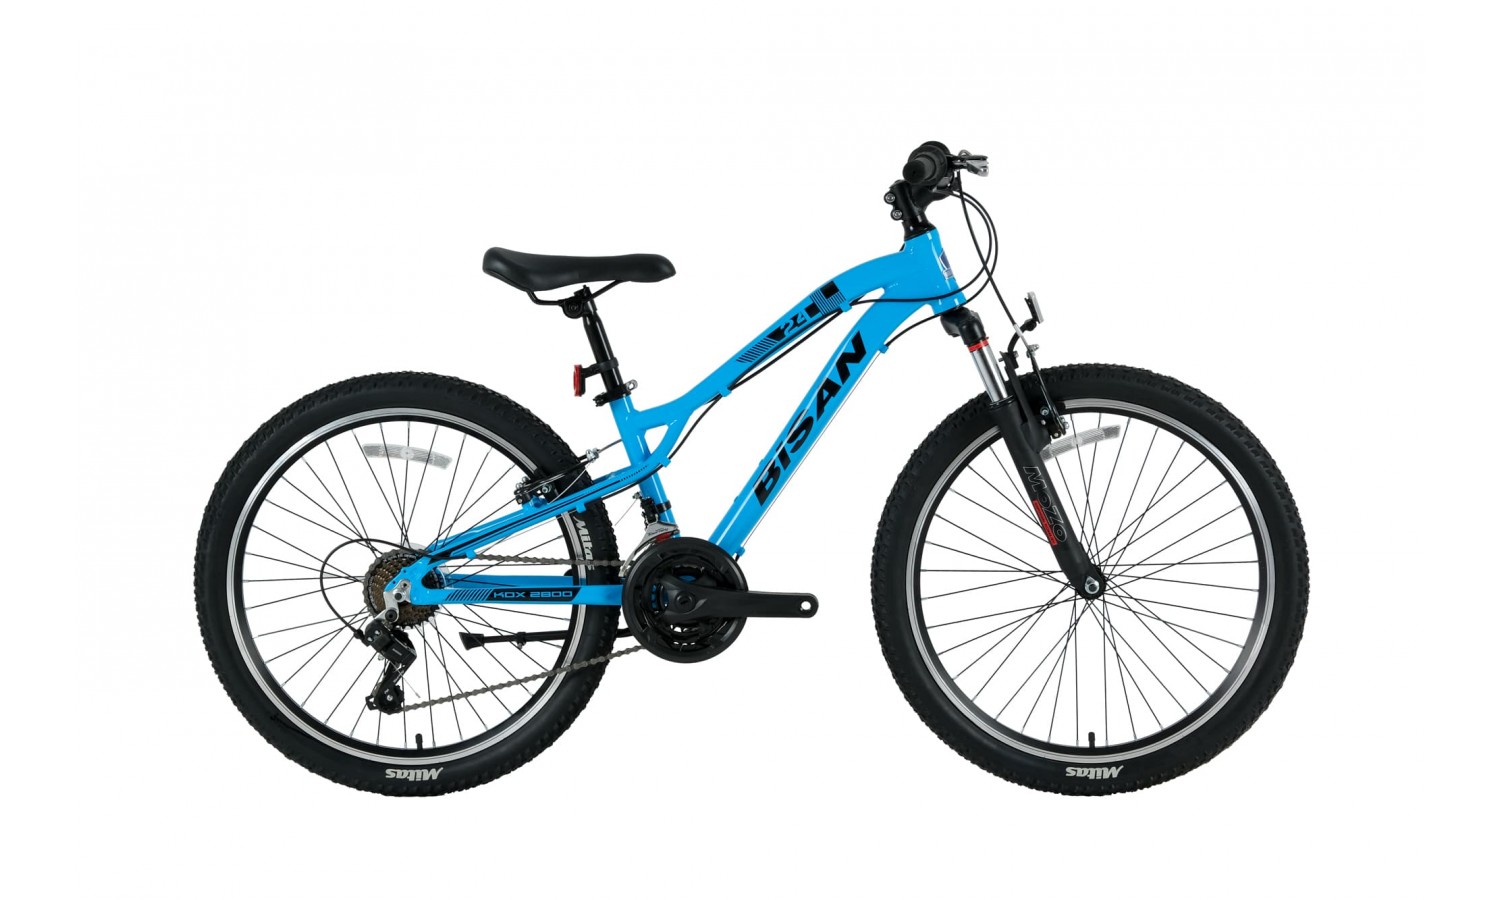 Bisan Kdx 2800 24 Jant V Fren Dağ Bisikleti (Mavi Siyah)